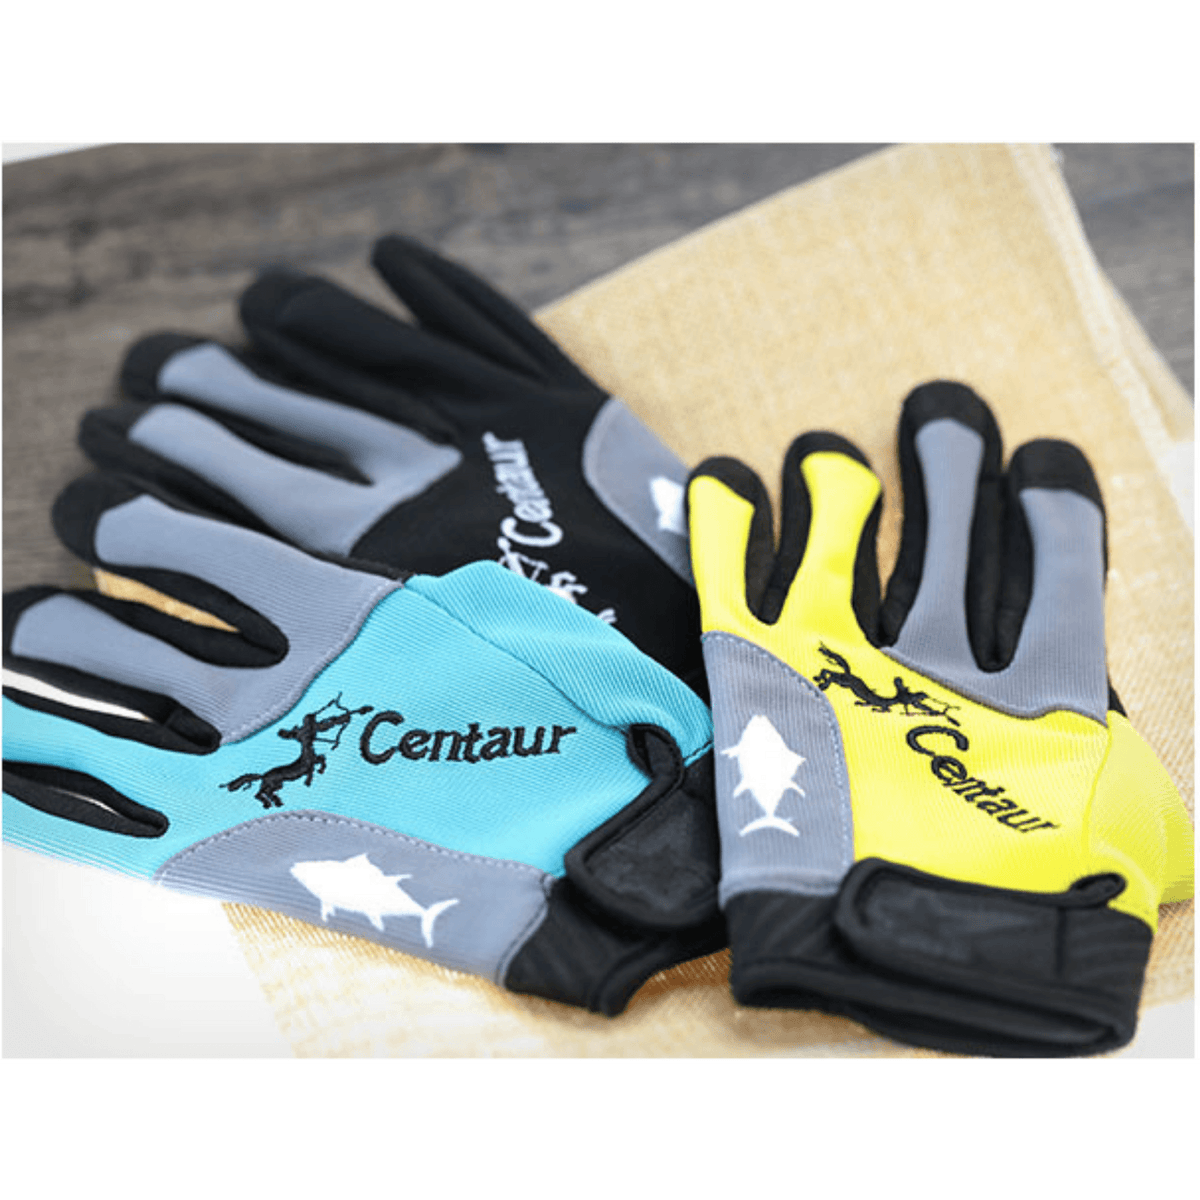 Centaur Gloves